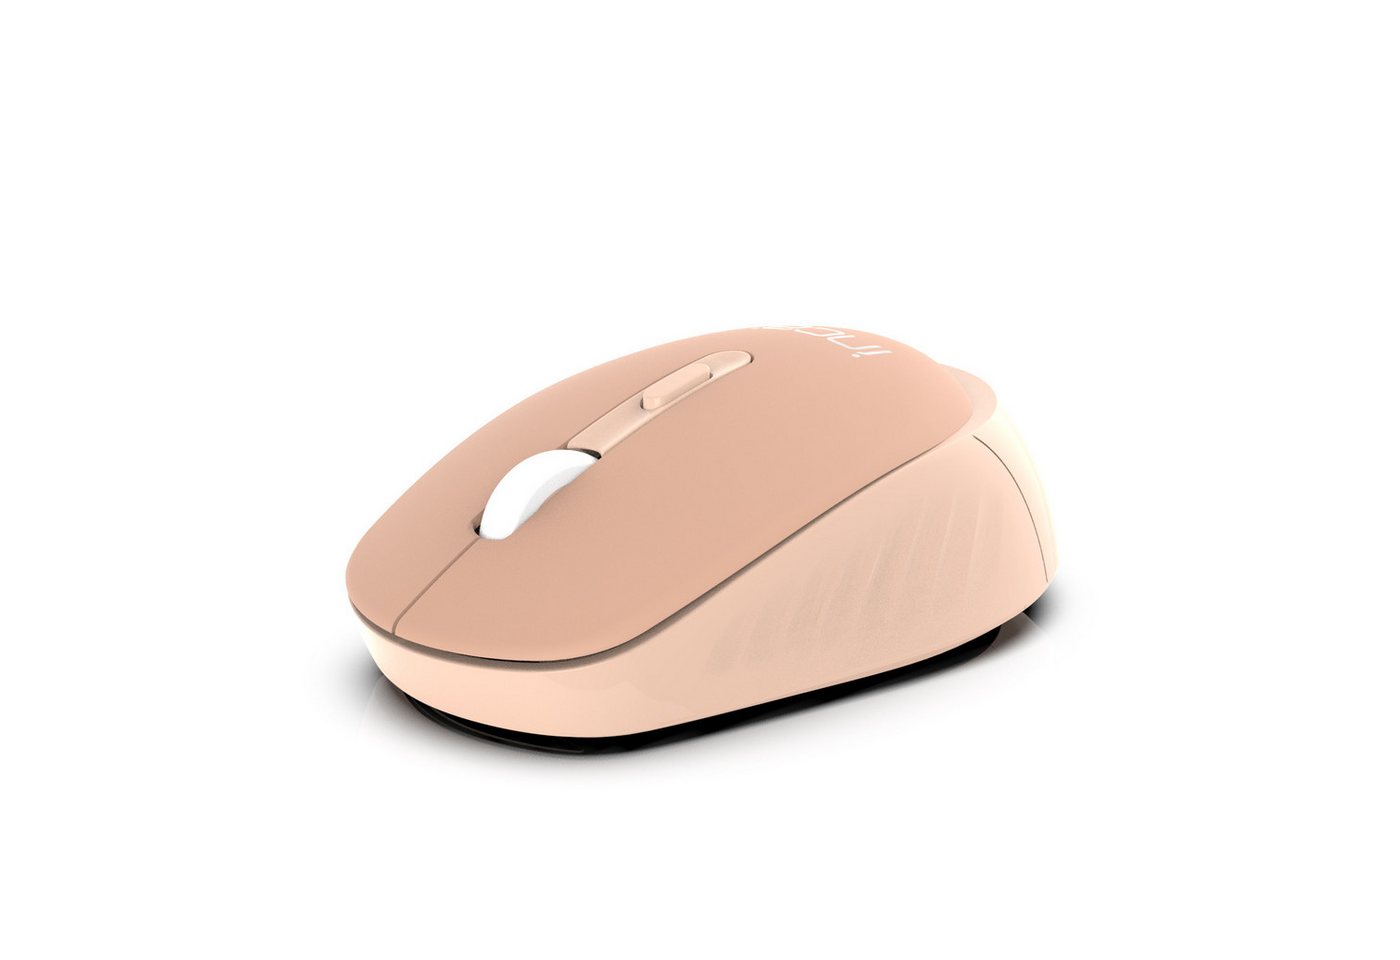 INCA Candy Design Wireless Mouse Maus, 2.4GHz Wireless, Ergnomisch Maus von INCA